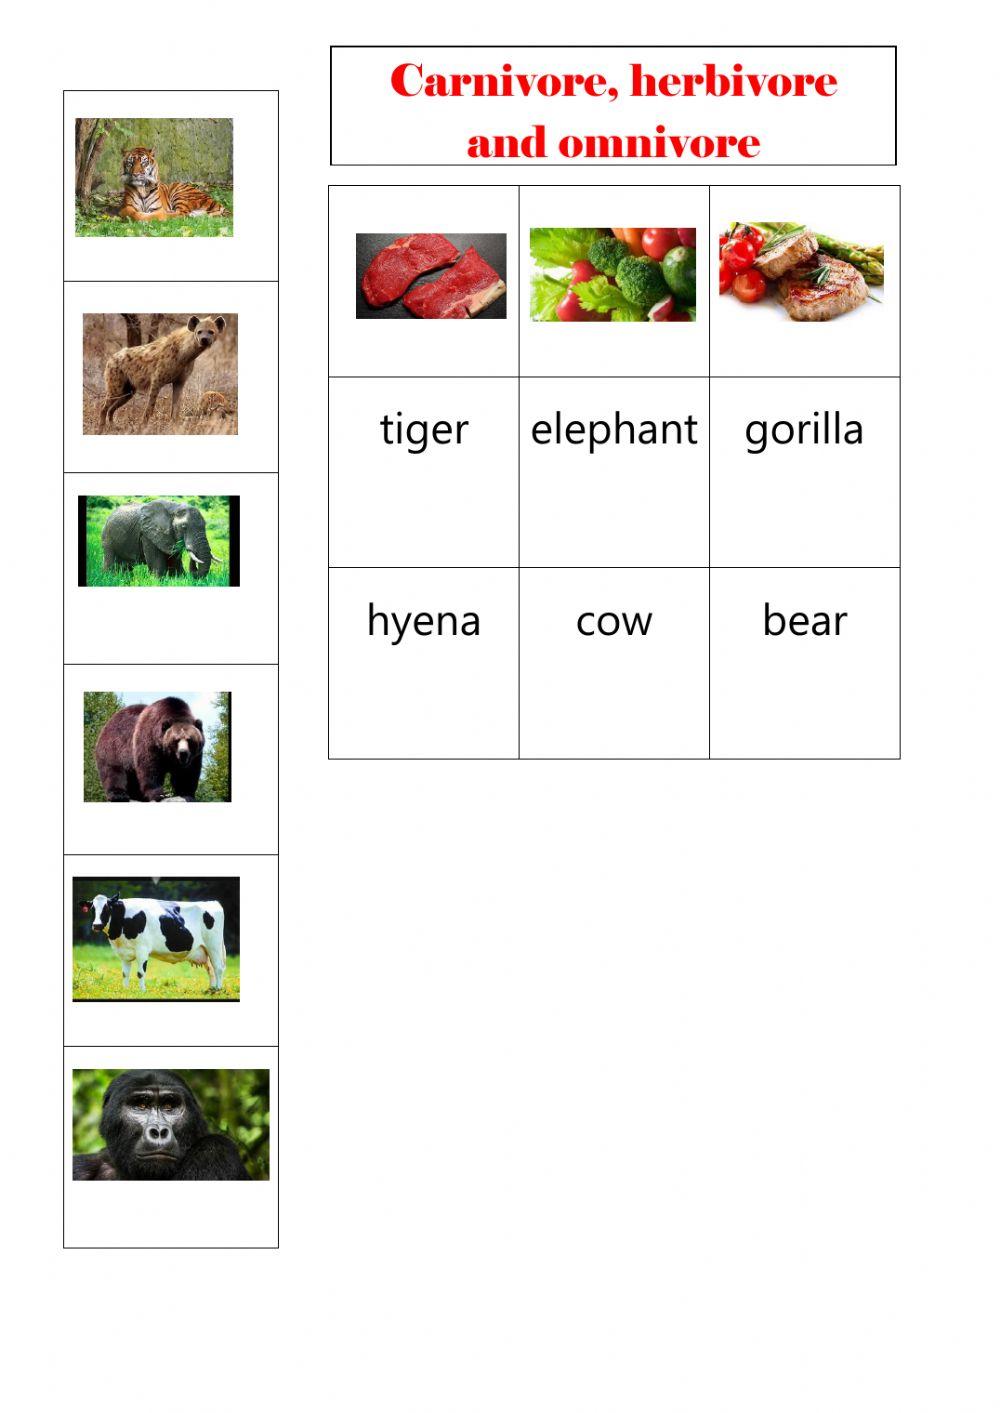 Carnivore, herbivore and omnivore